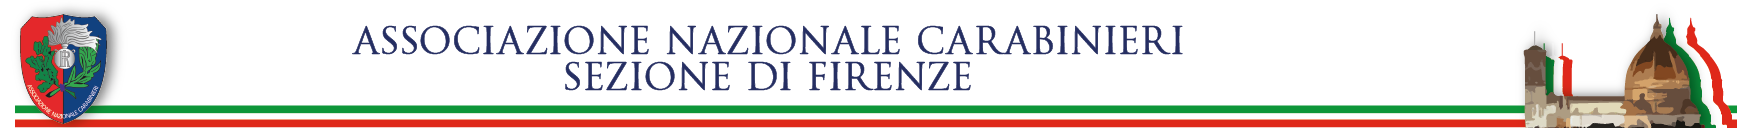 Associazione Nazionale Carabinieri Logo